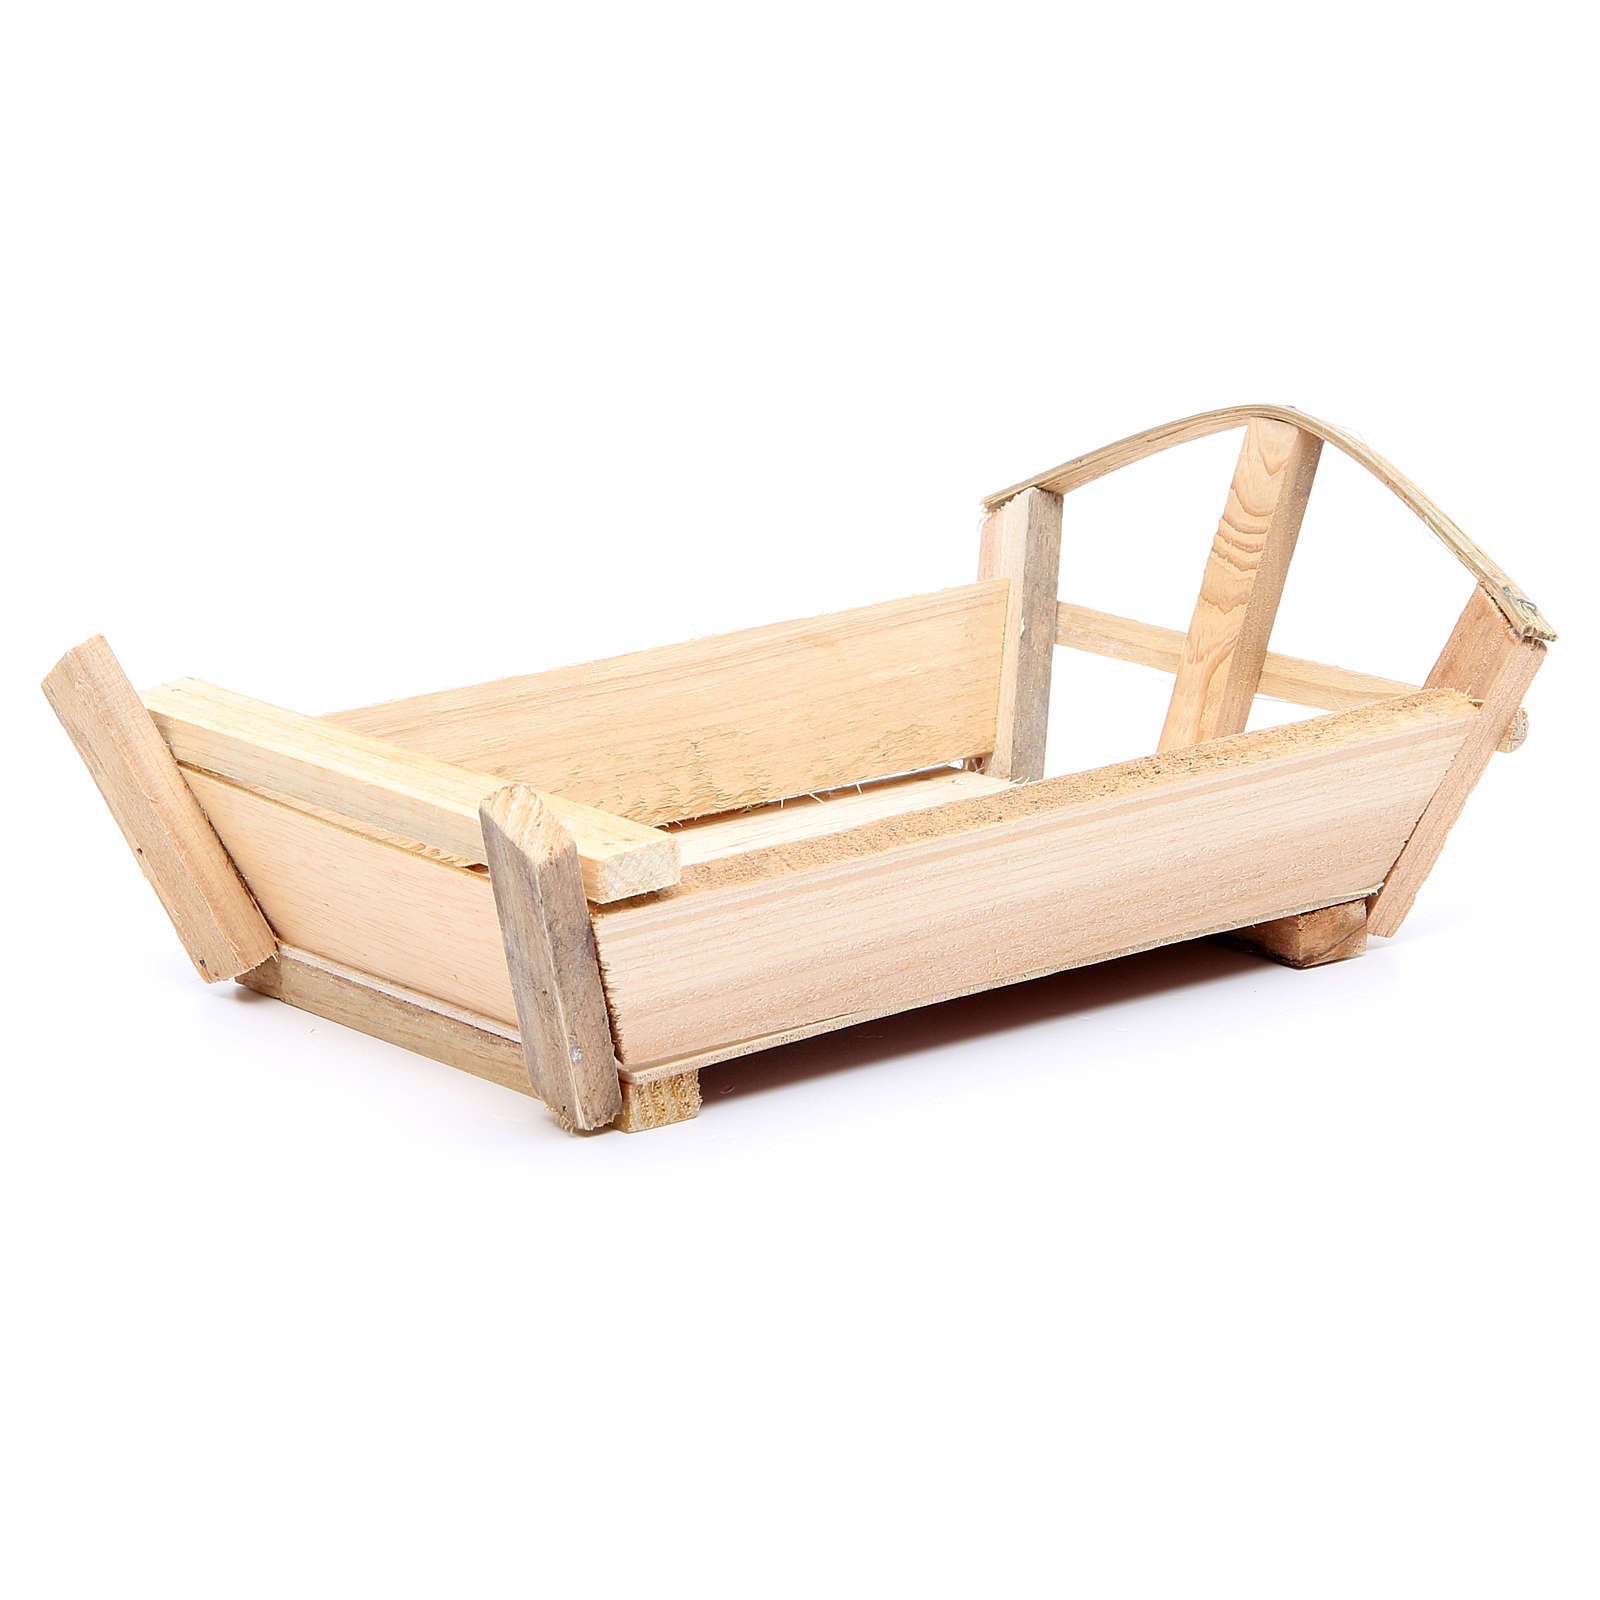 wooden cradle for elders